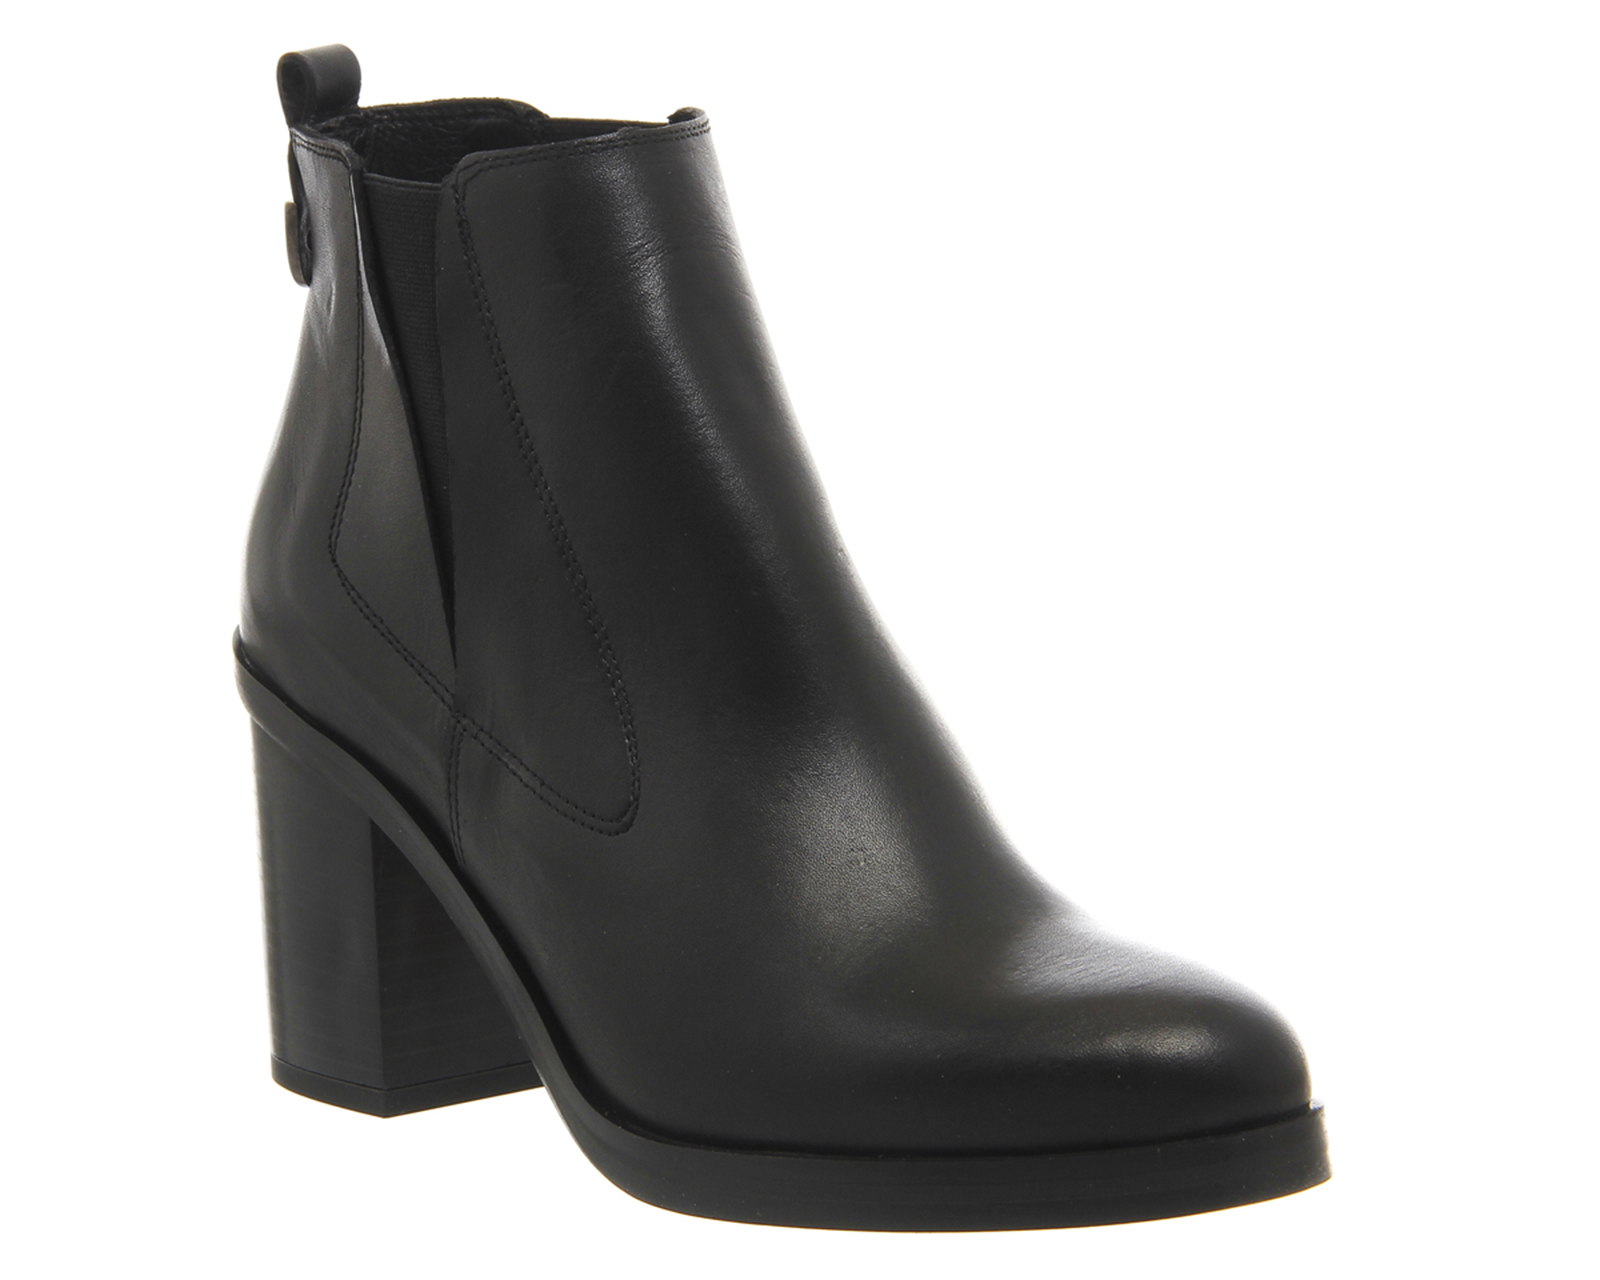 black block heel chelsea boots